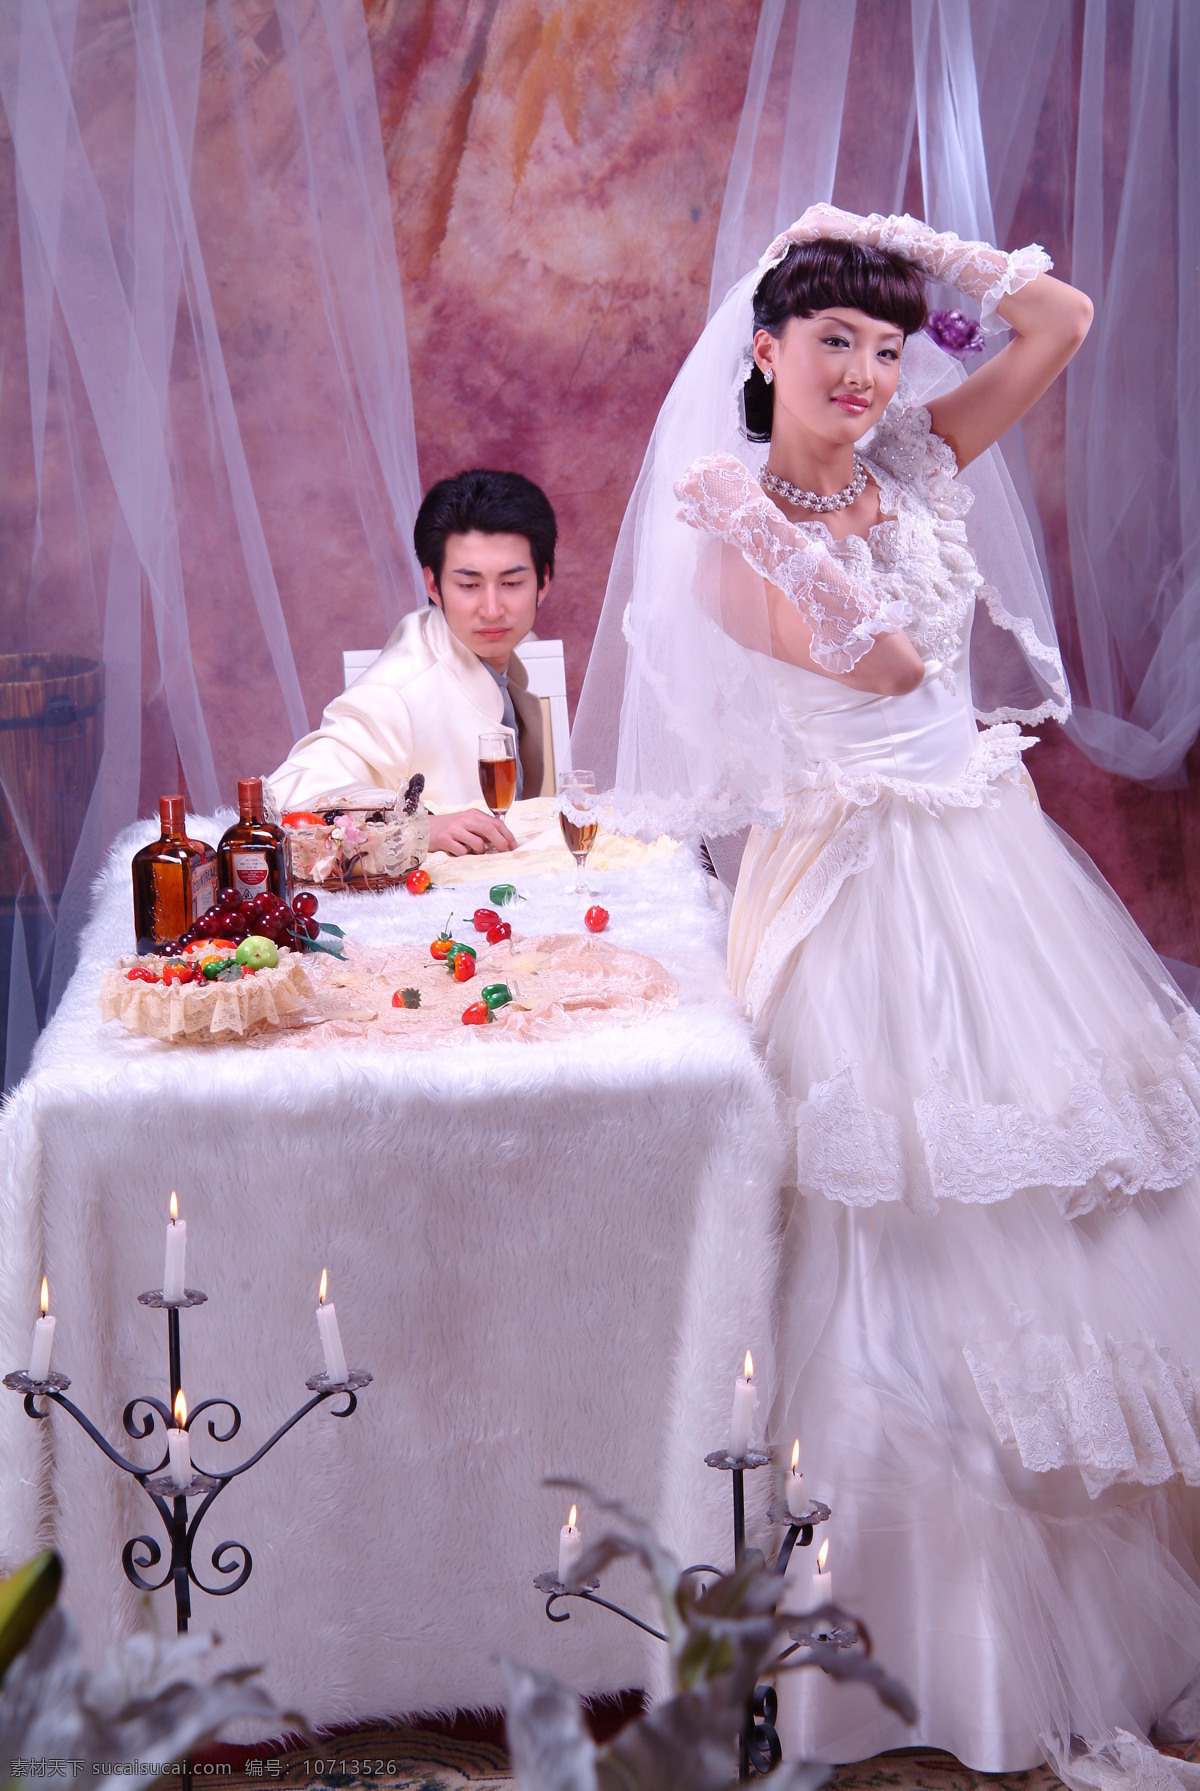 香港写真 婚纱照 美女 新娘 新郎 红地毯 花朵 笑容 西装 红酒 桌子 台灯 婚纱摄影 香港 婚纱 二 人物摄影 人物图库